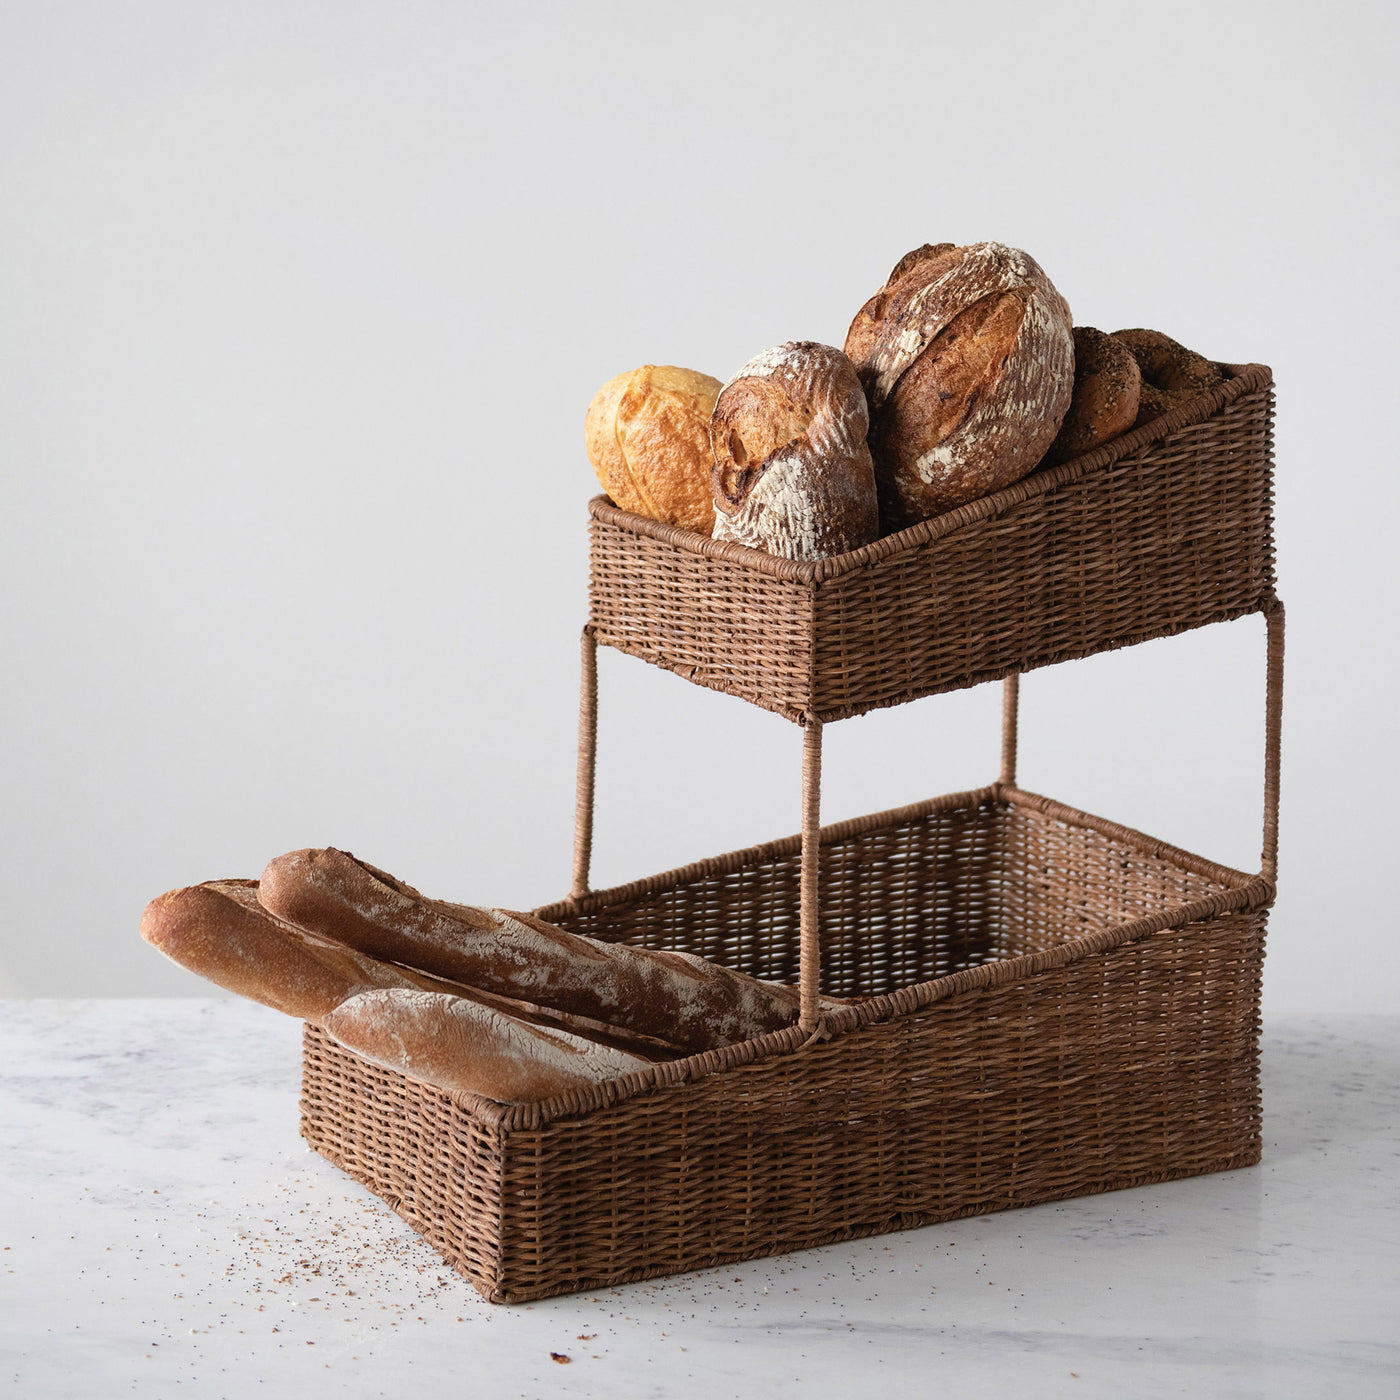 Bakery Basket - Danshire Market and Design 